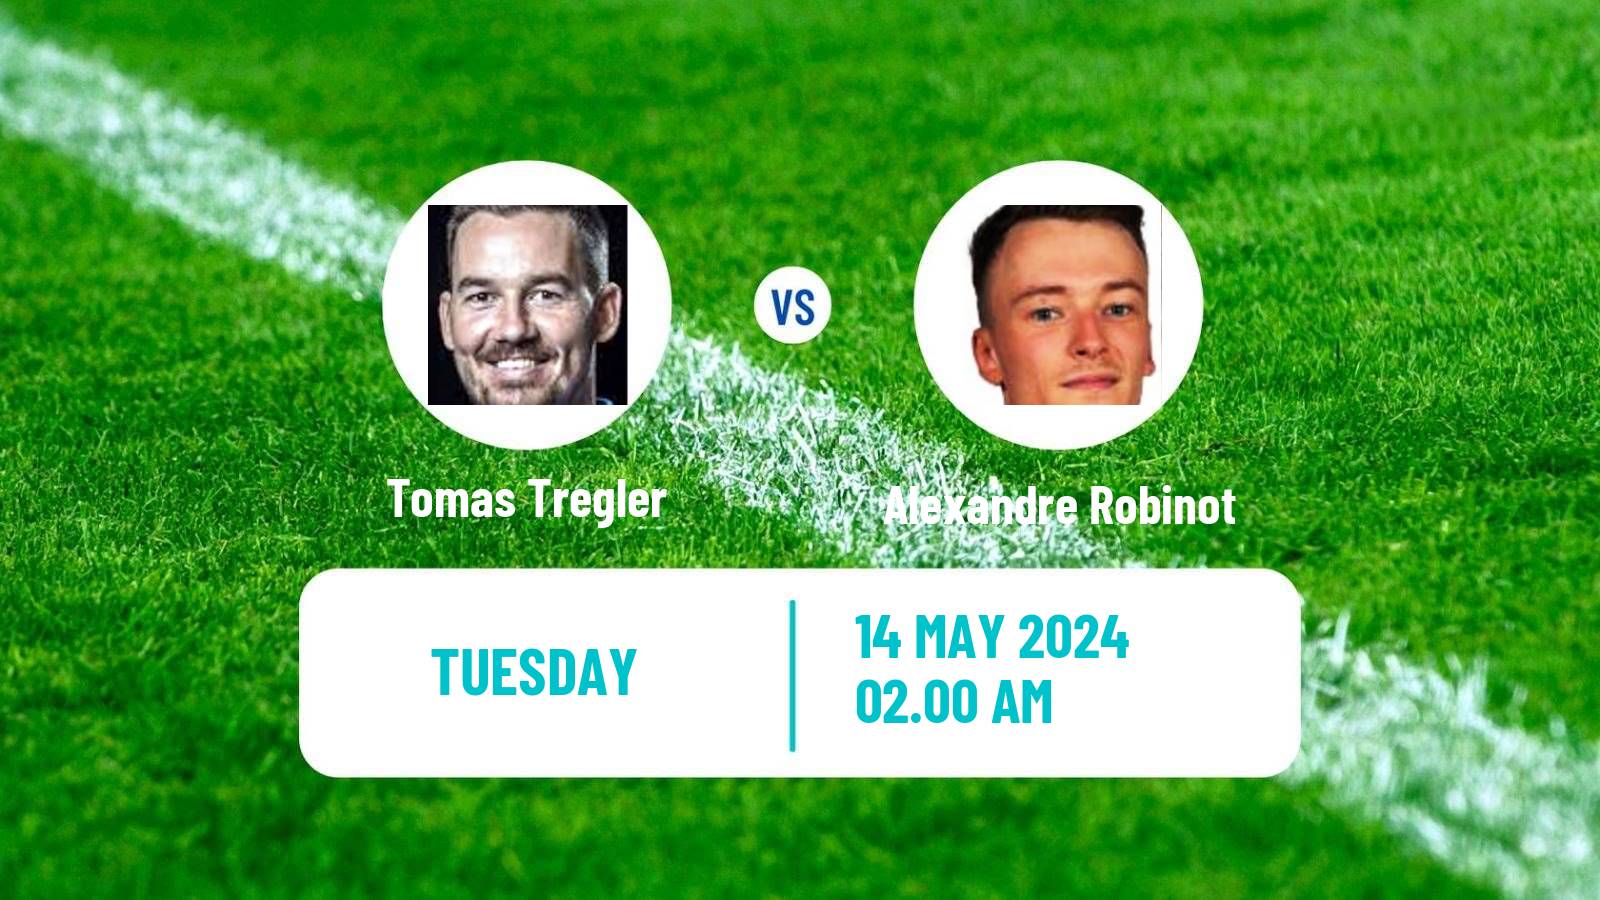 Table tennis Tt Star Series Men Tomas Tregler - Alexandre Robinot